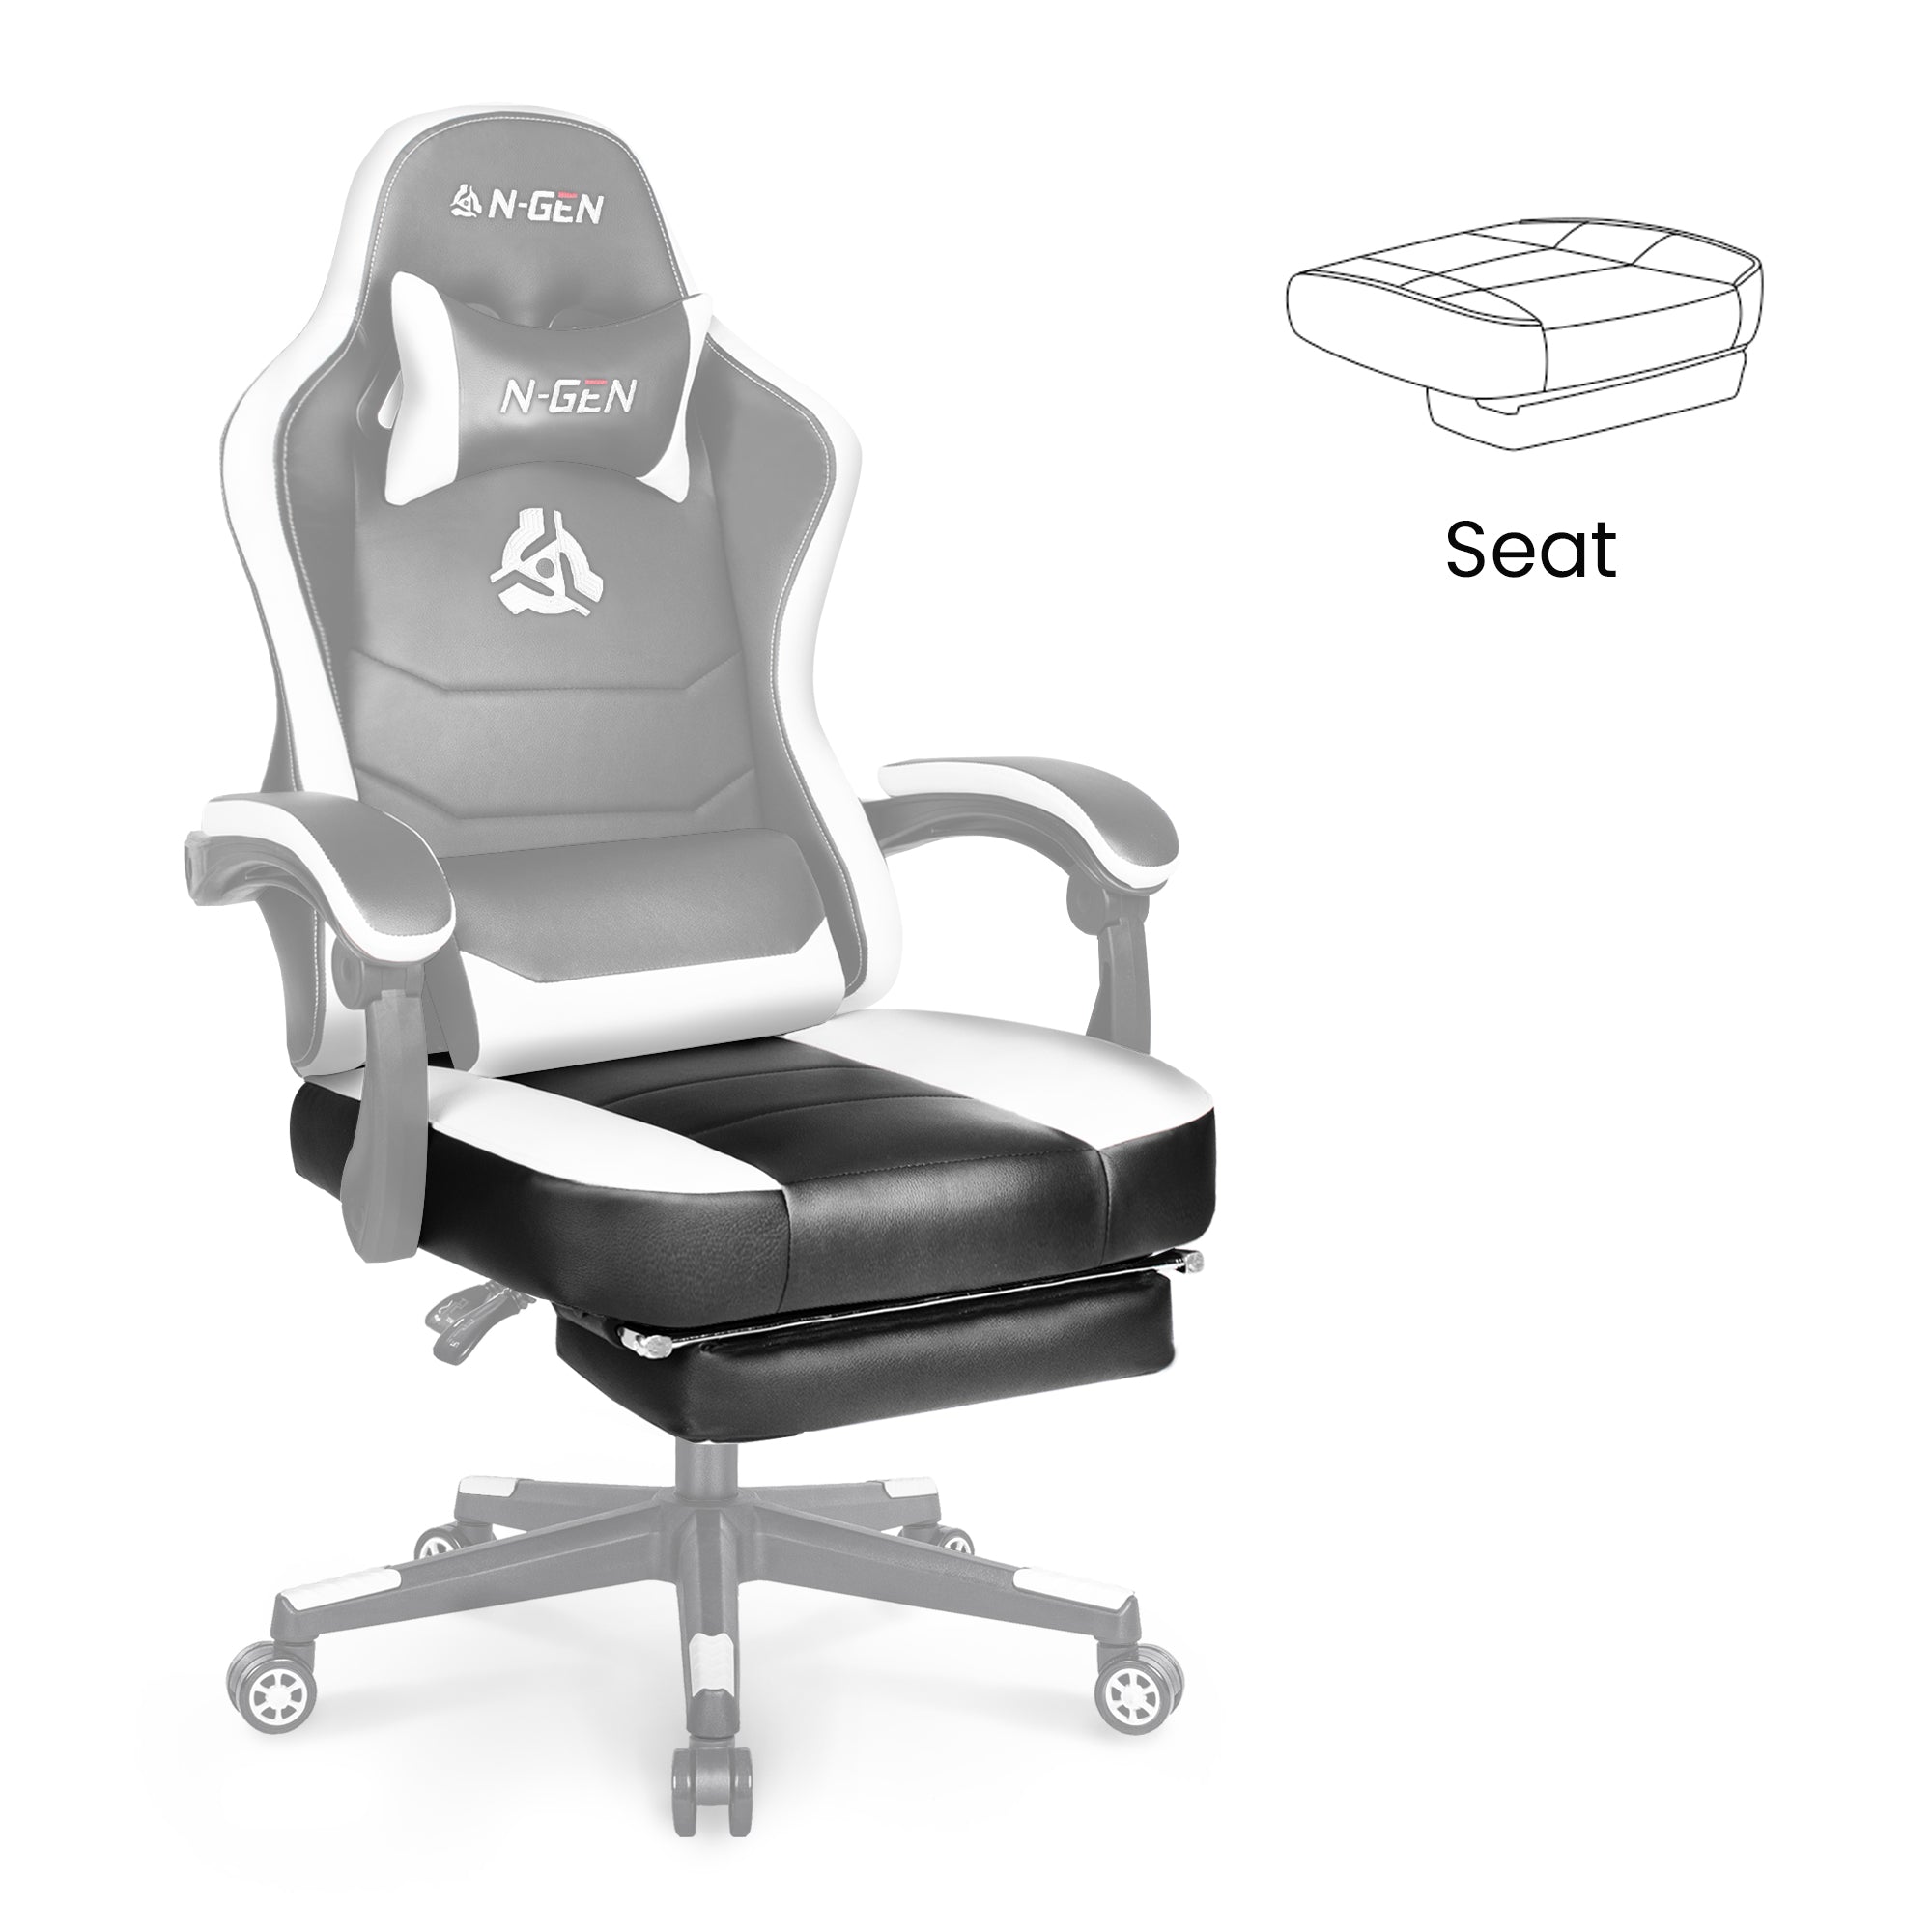 [part] Citus Seat